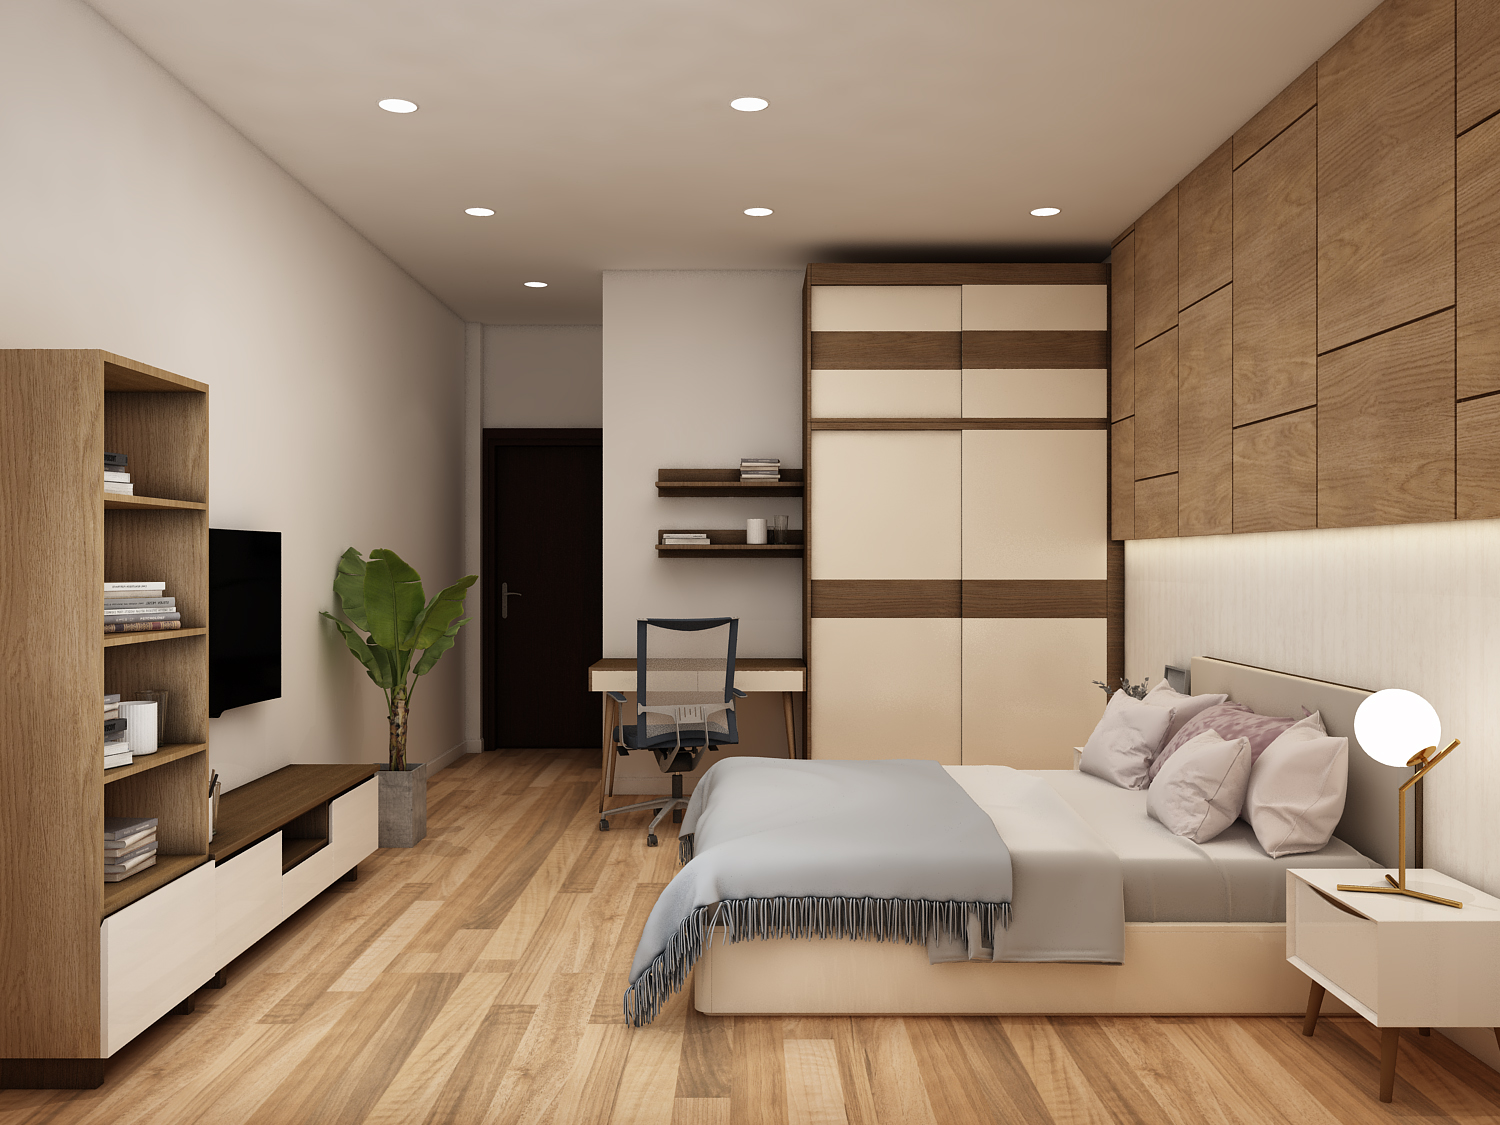 Nội thất phòng ngủ: Tạo không gian nghỉ ngơi thoải mái và ấm cúng